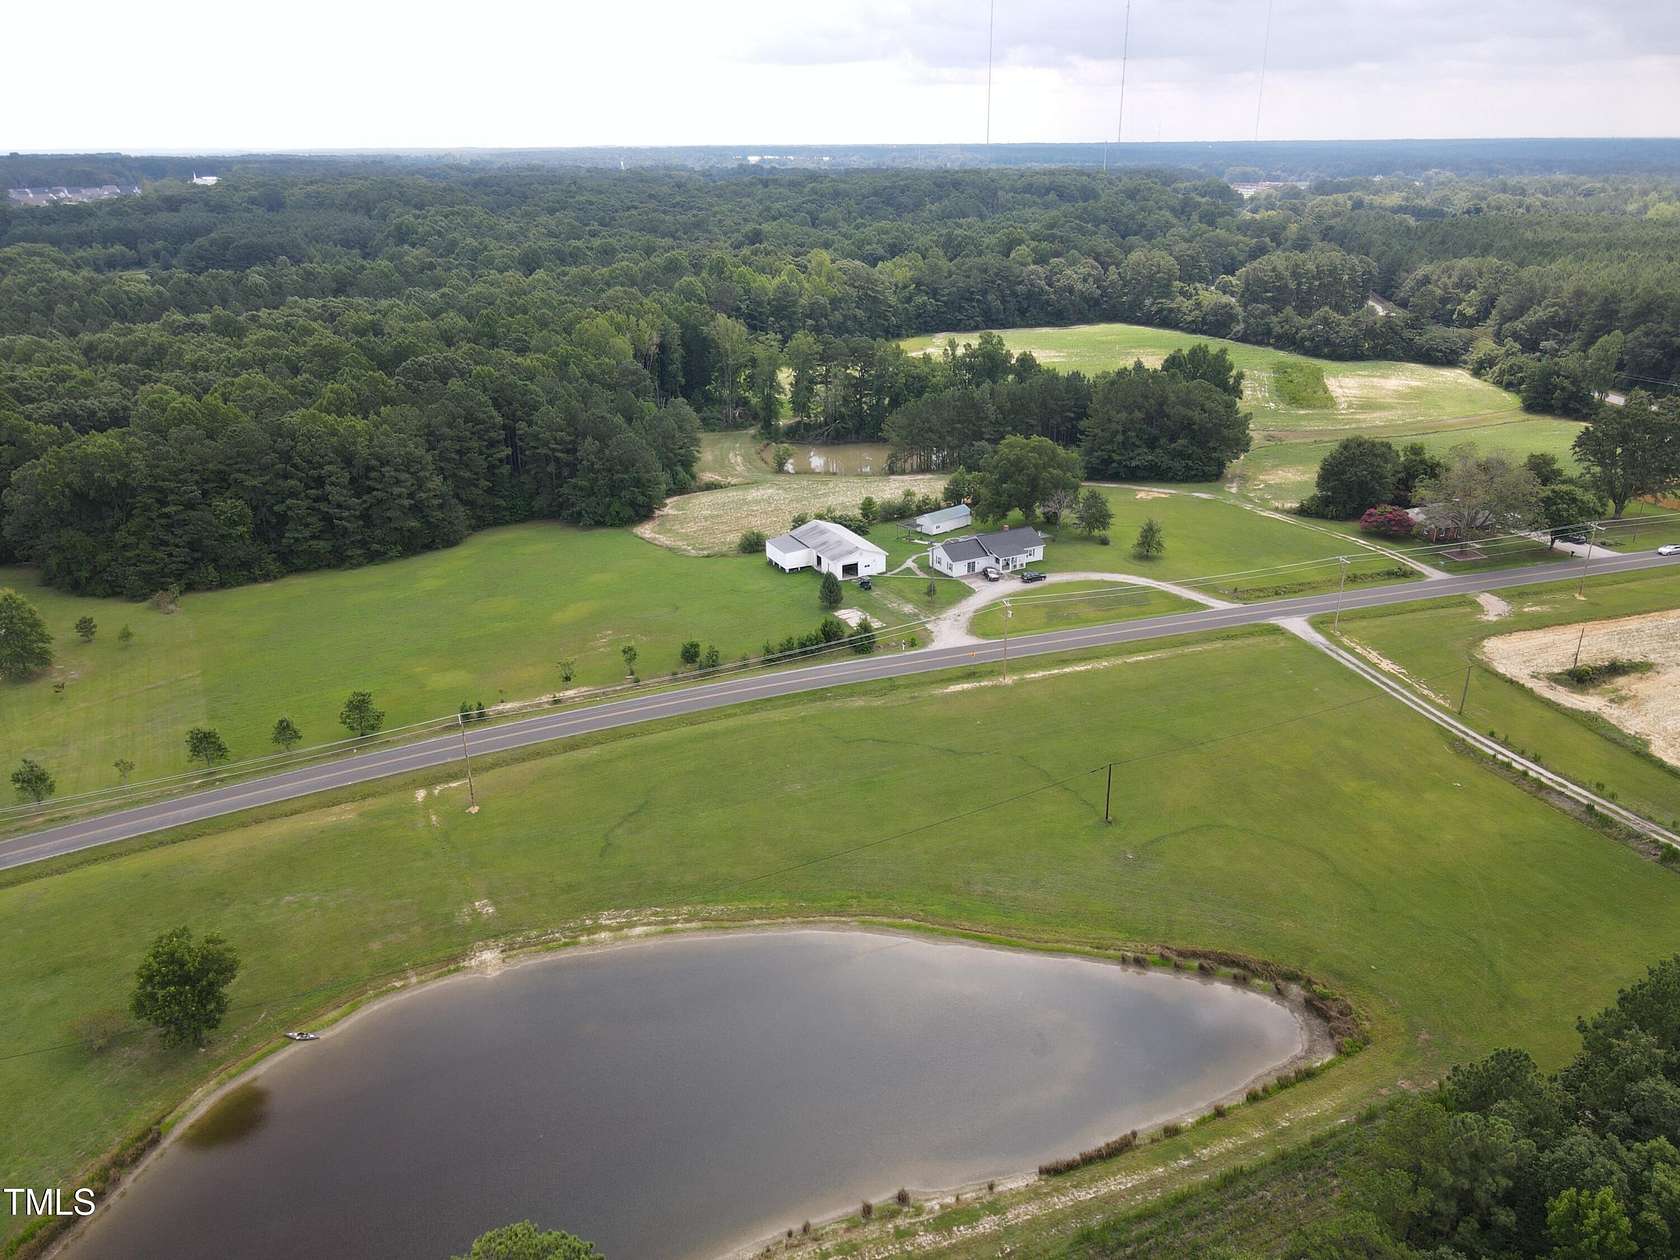 84 Acres of Land for Sale in Garner, North Carolina